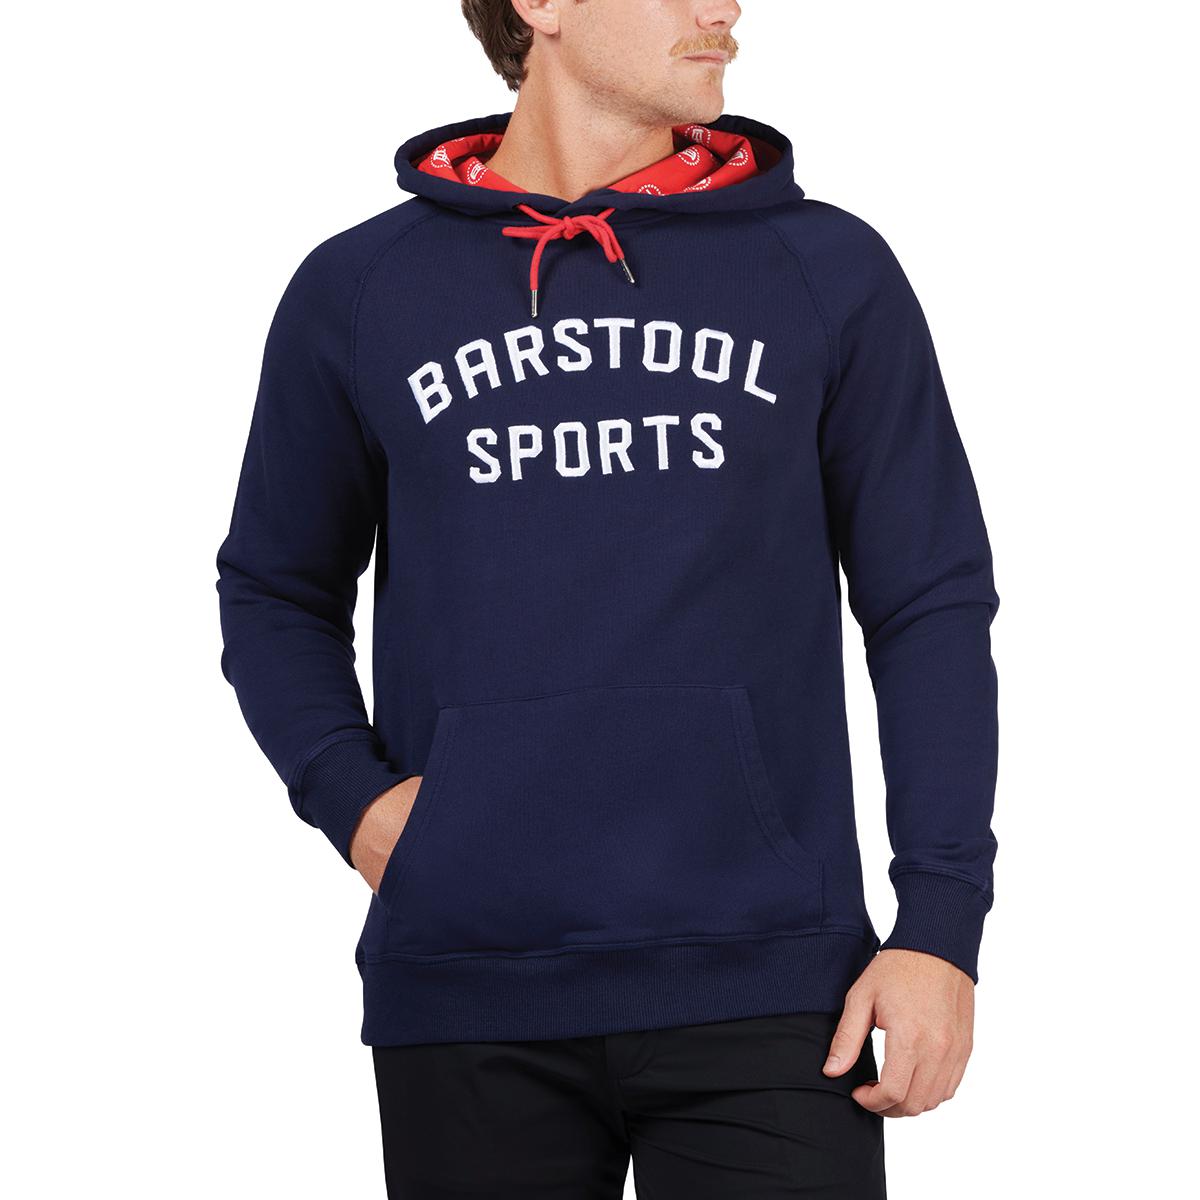 Barstool Sports Printed Hoodie